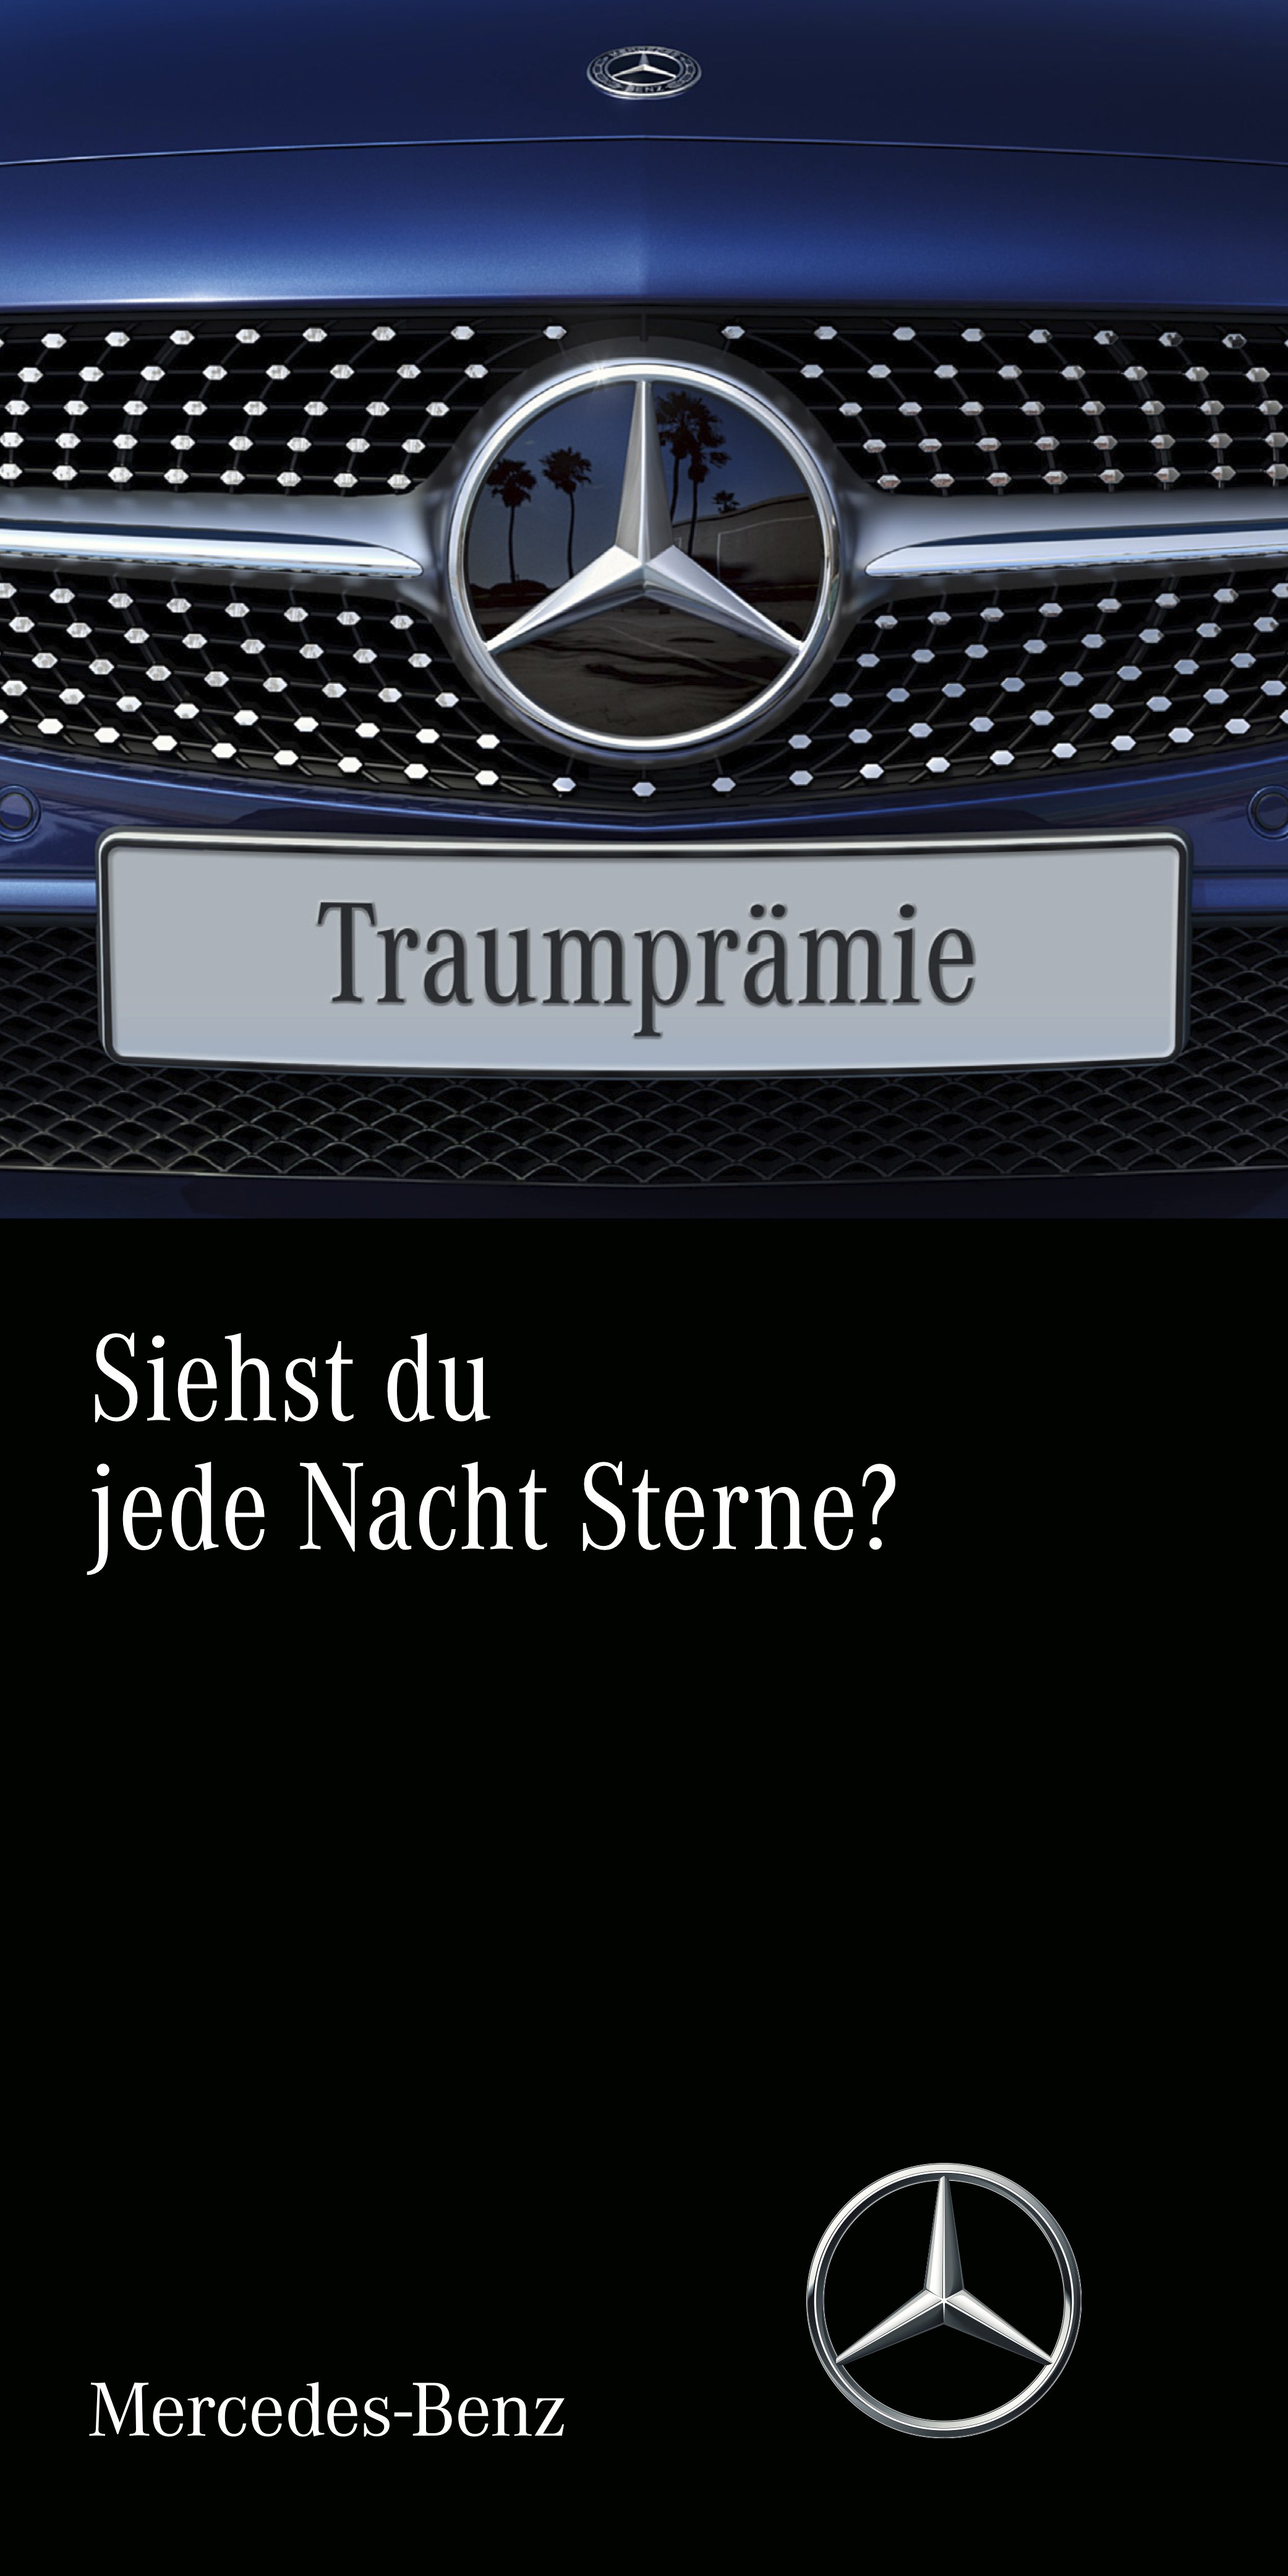 Mercedes-Benz Kampagne "Traumprämie"